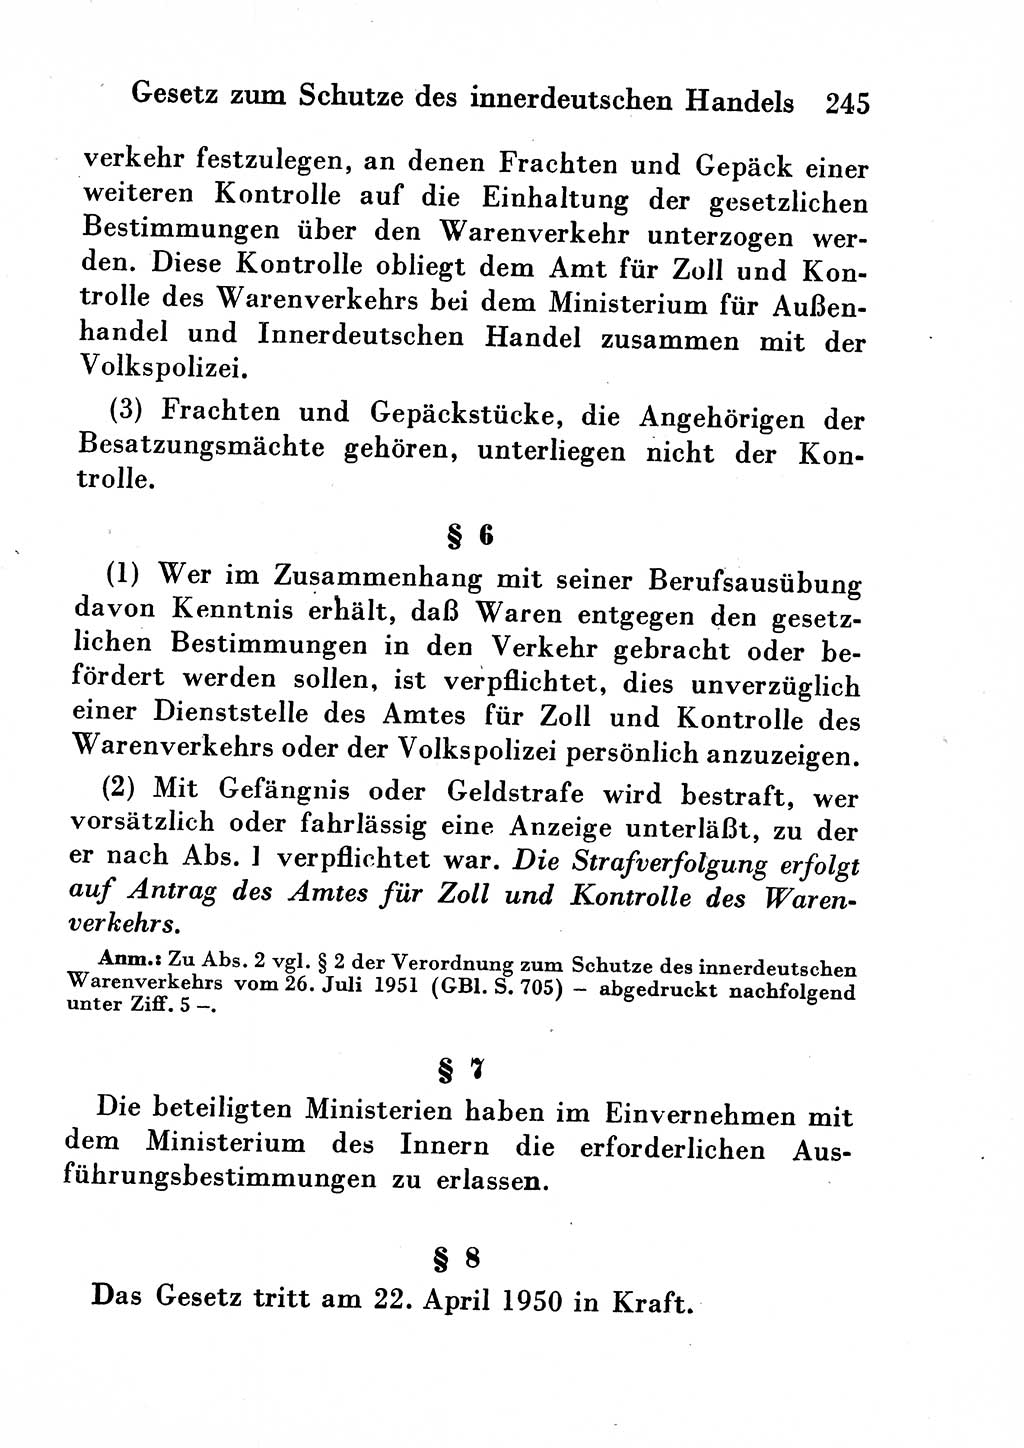 Strafgesetzbuch (StGB) und andere Strafgesetze [Deutsche Demokratische Republik (DDR)] 1954, Seite 245 (StGB Strafges. DDR 1954, S. 245)